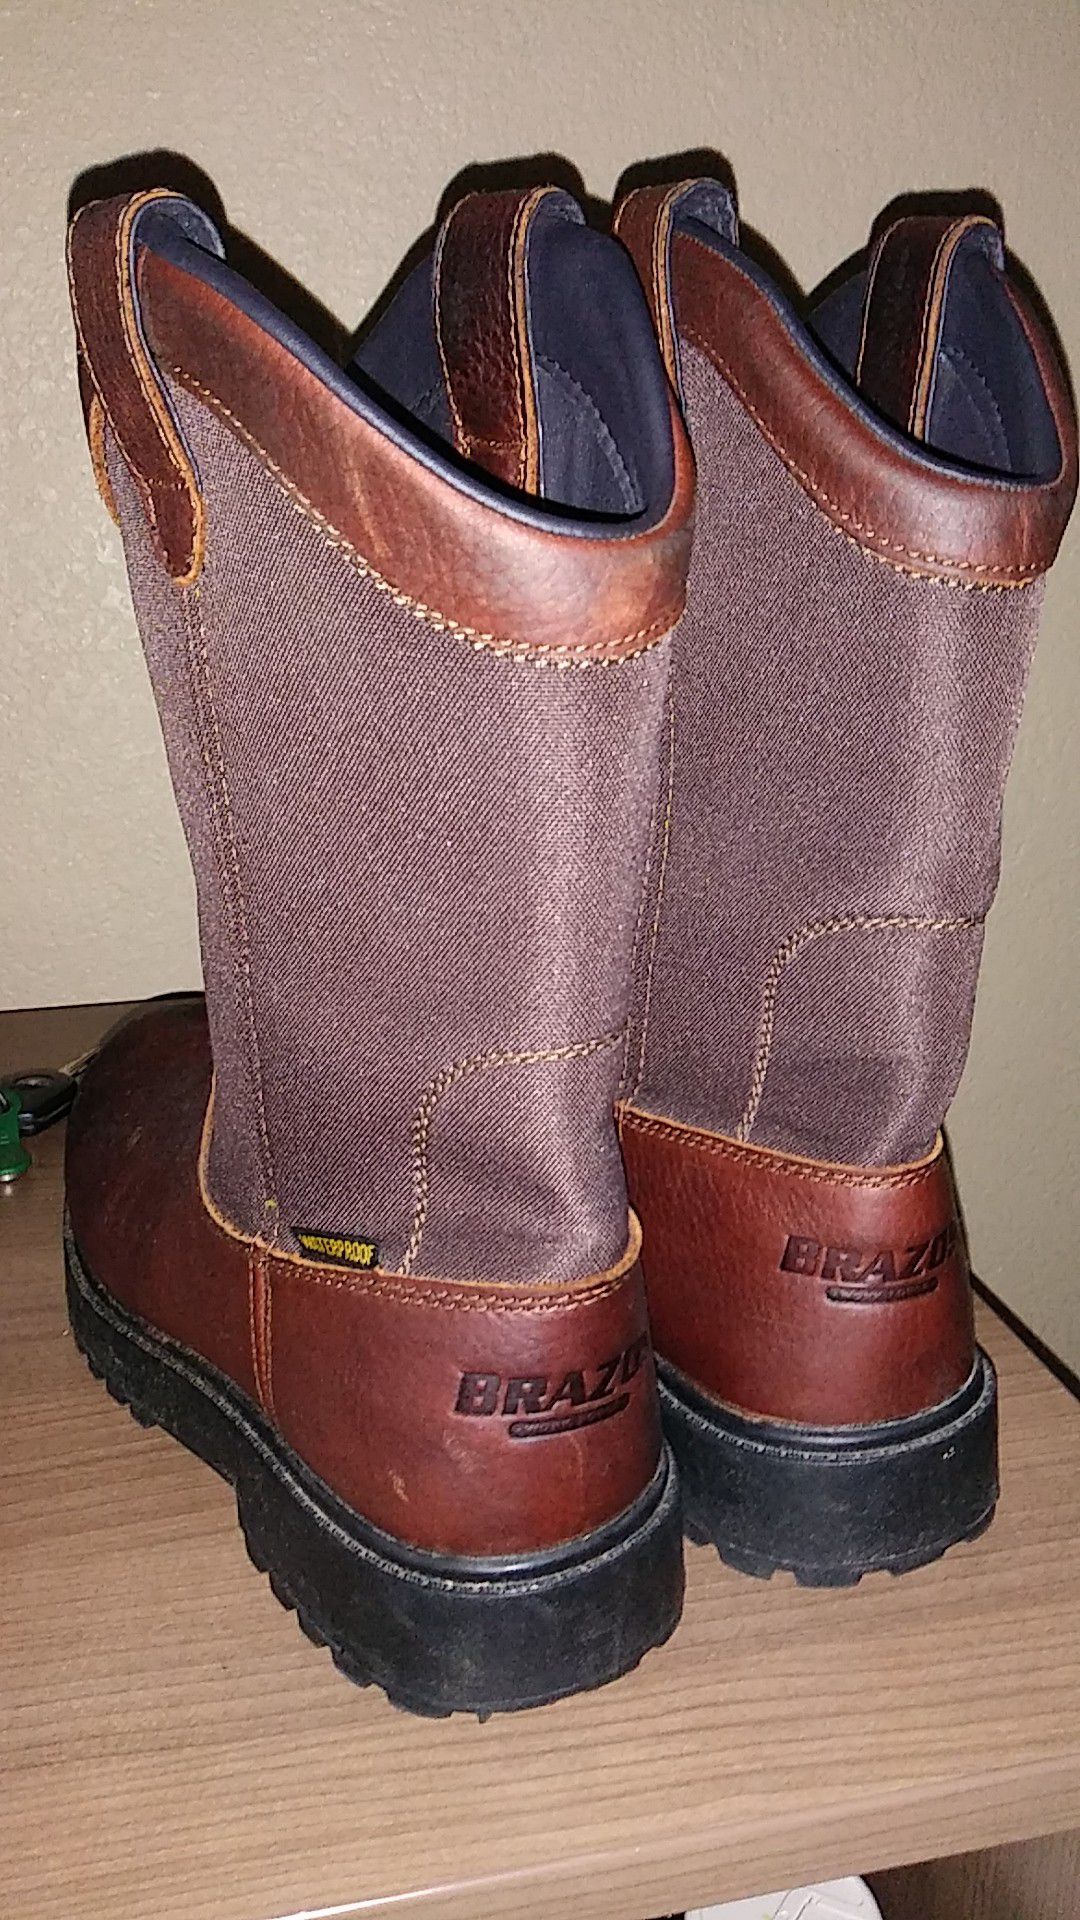 Brazos work boots